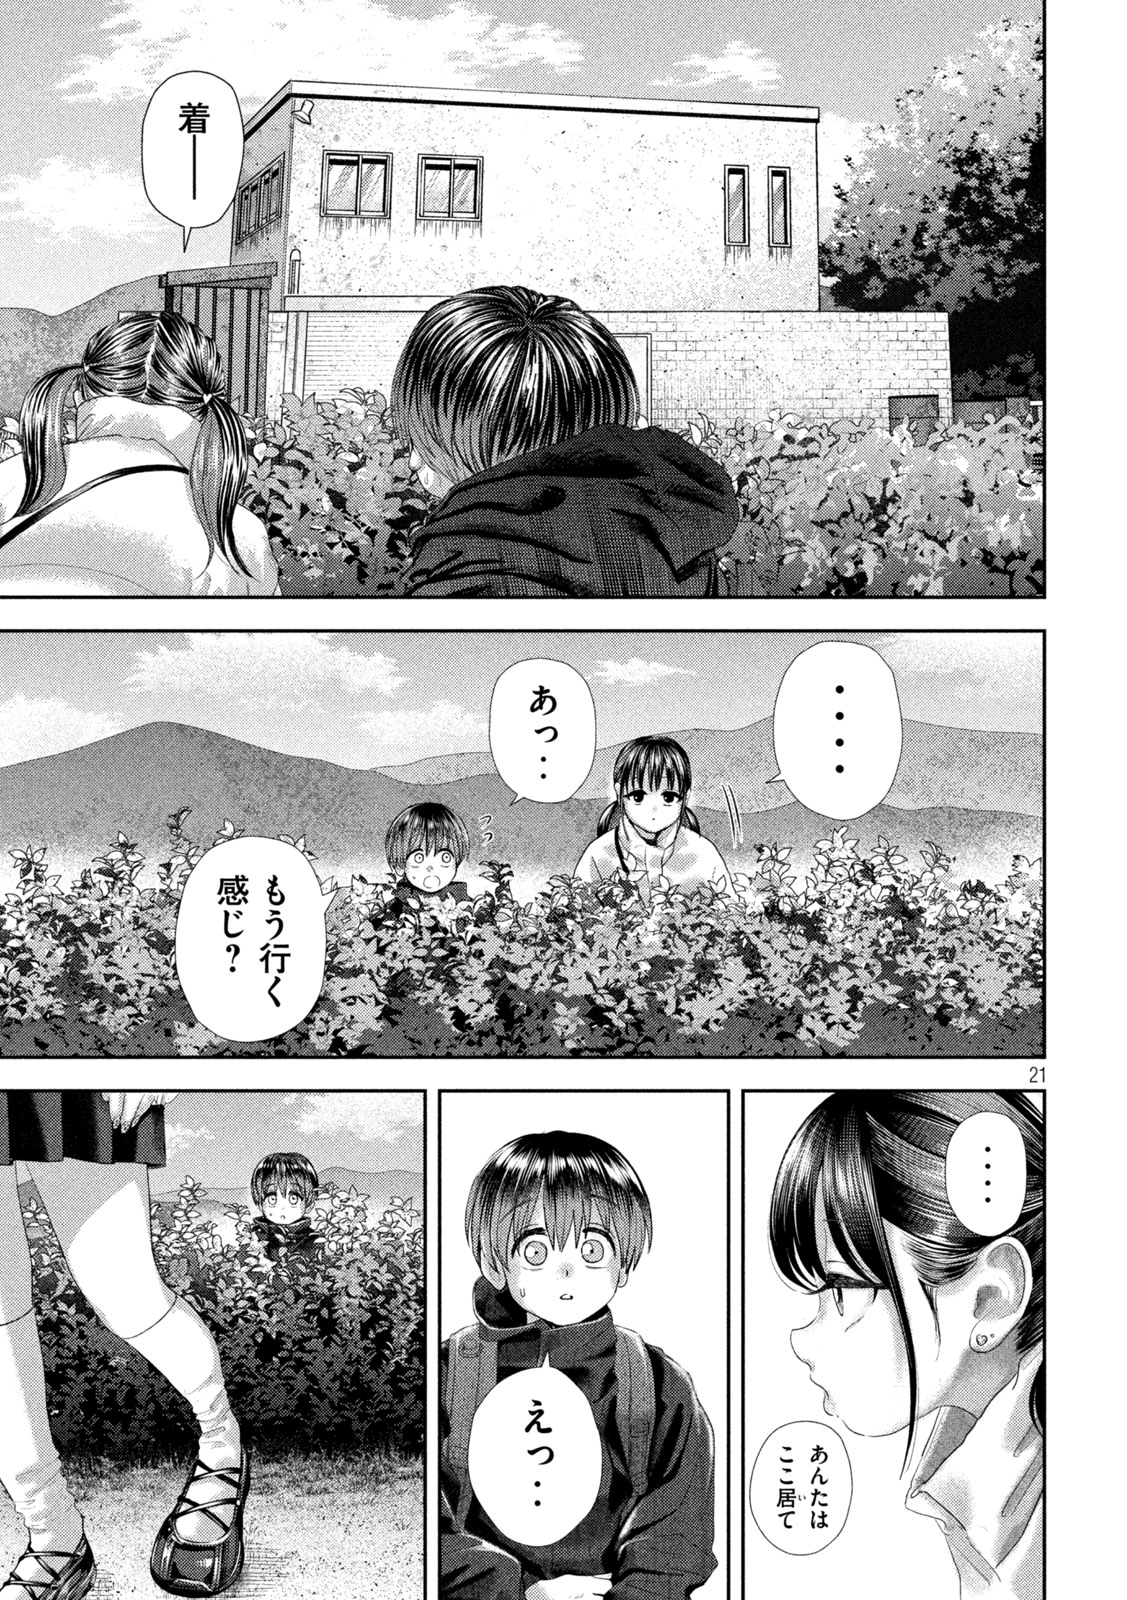 Nezumi no Koi - Chapter 31 - Page 21